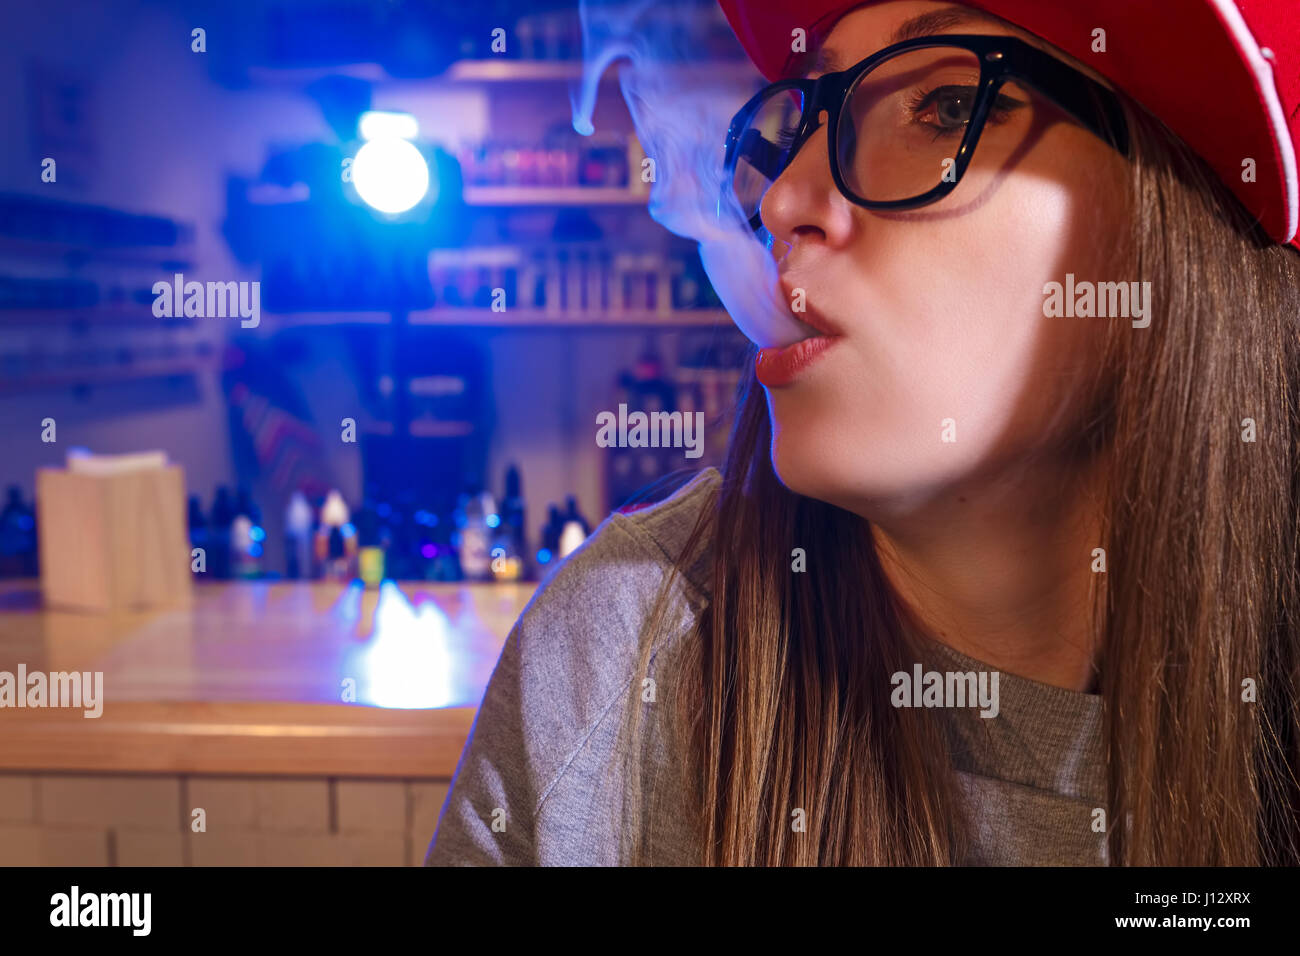 Junge hübsche Frau im roten Mütze Rauch eine elektronische Zigarette im Vaporizer Shop. Closeup. Stockfoto